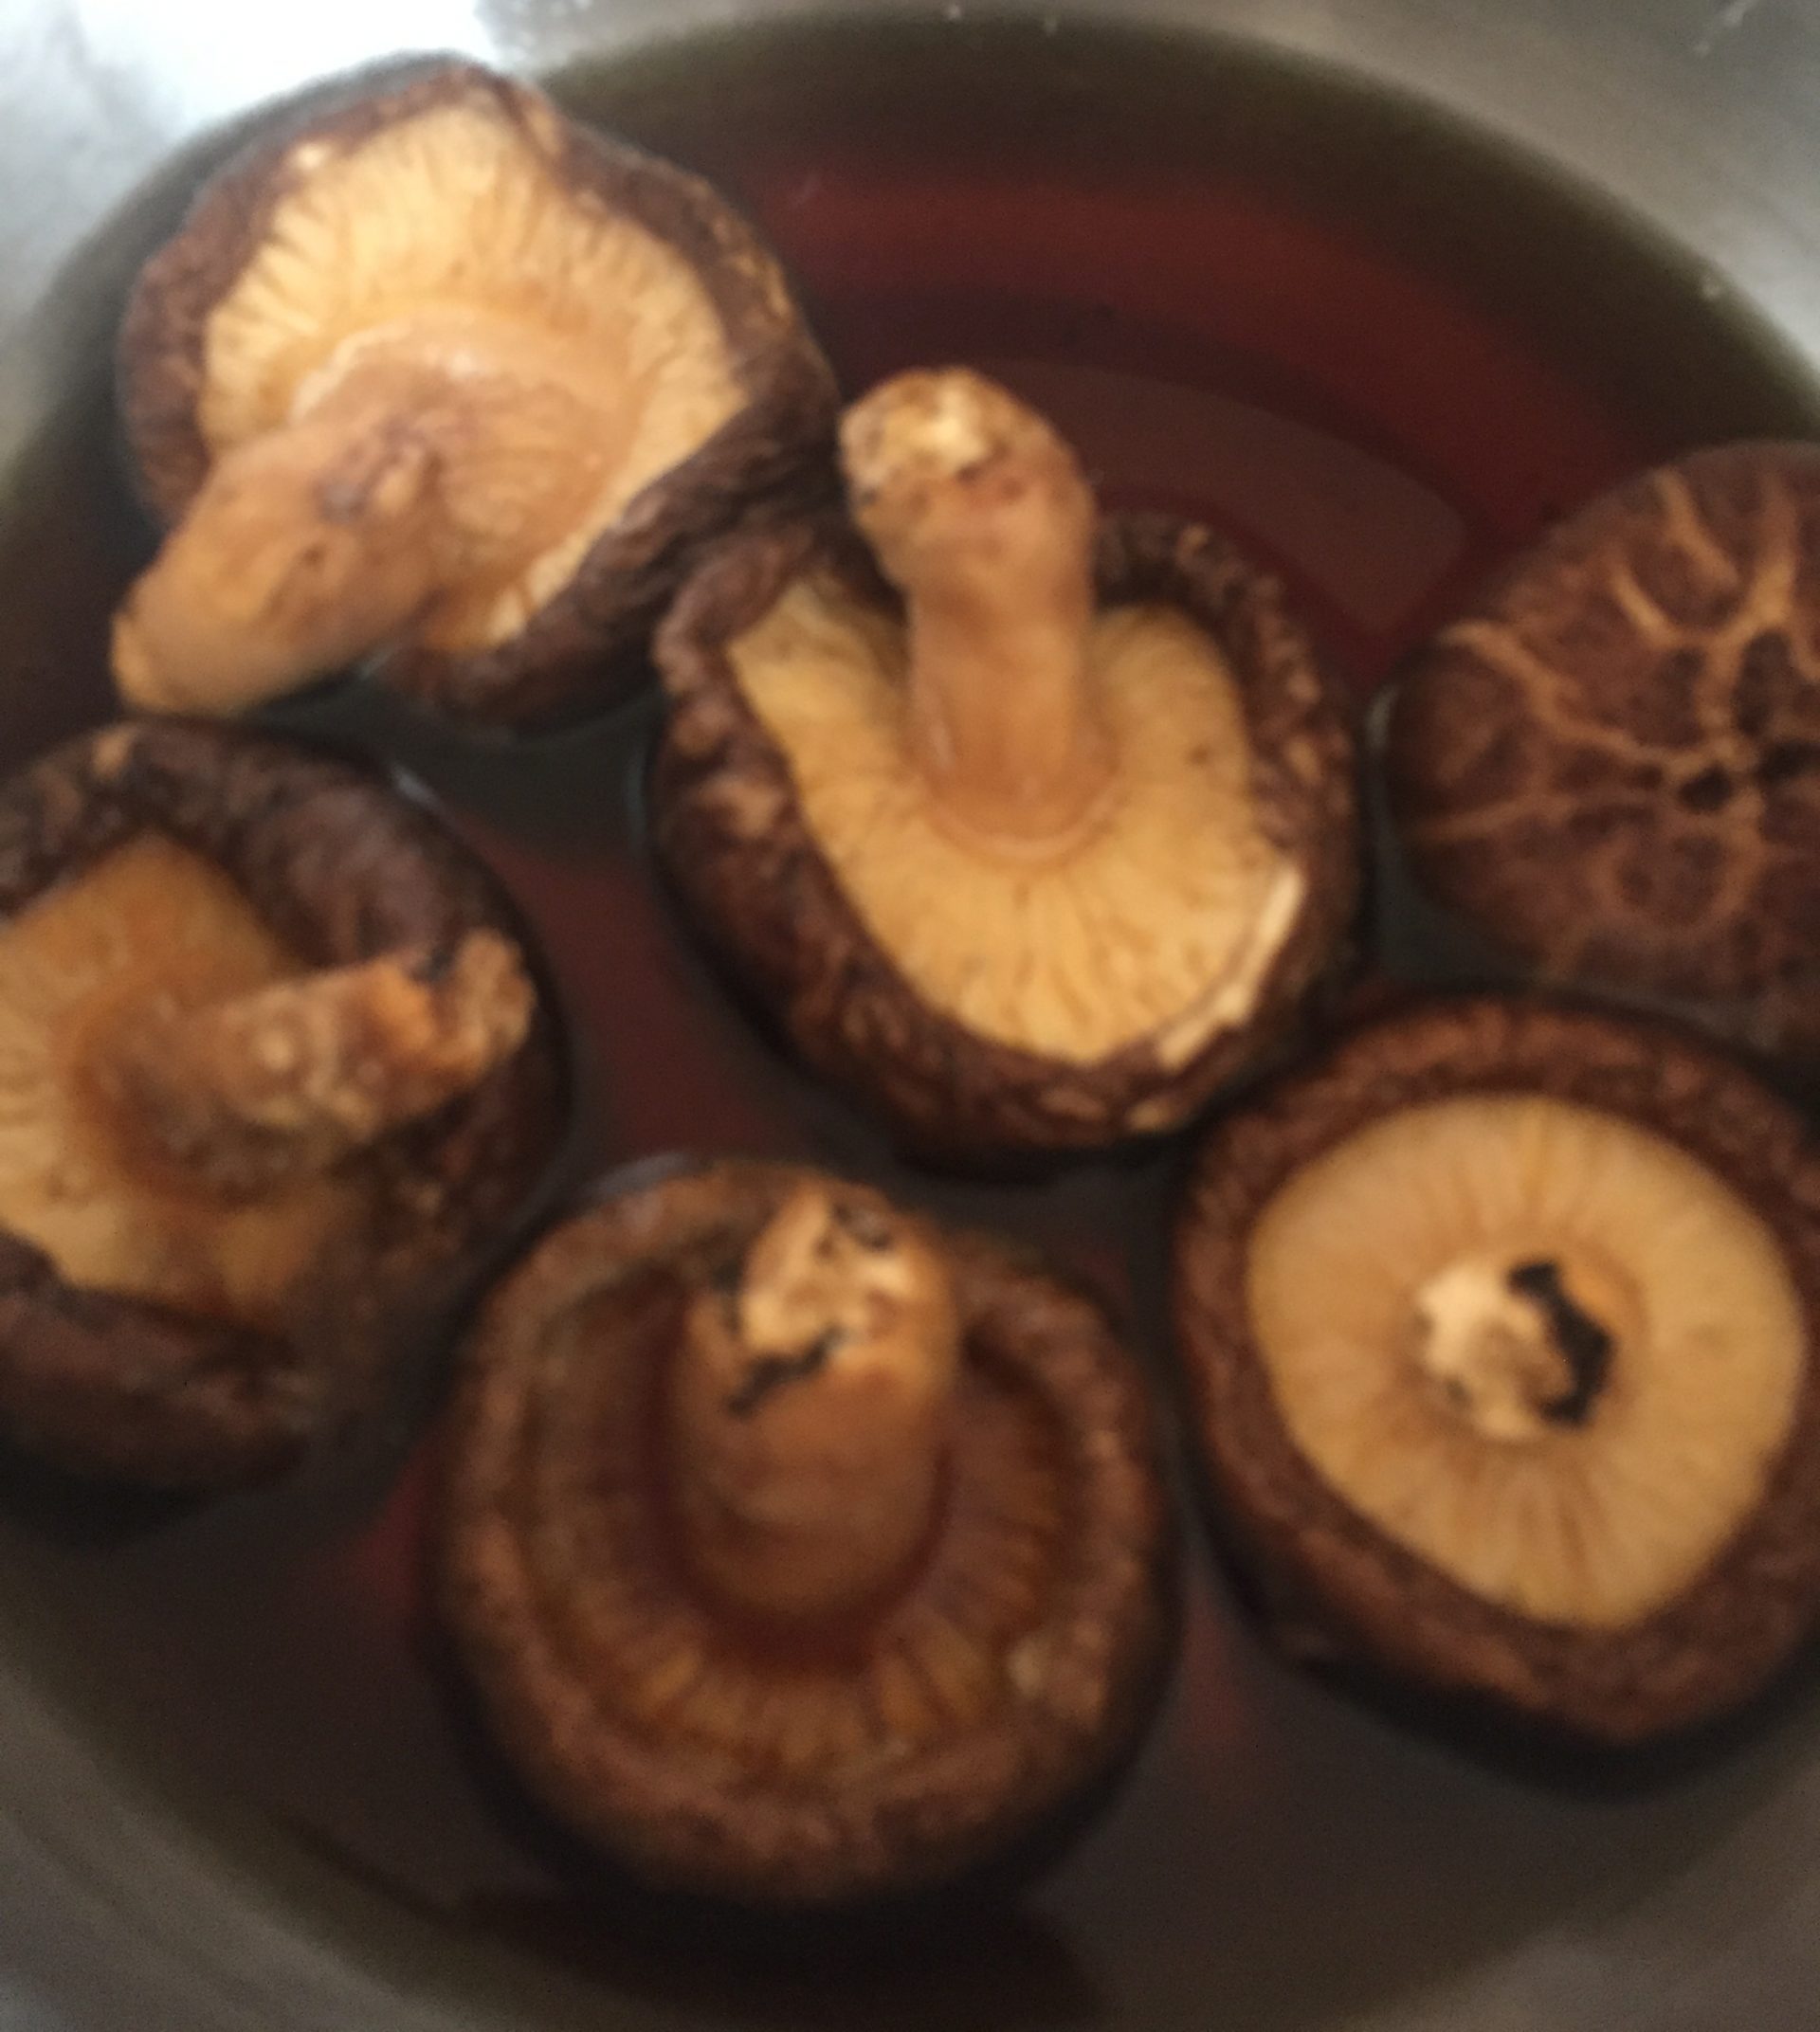 Soaking shitake mushrooms